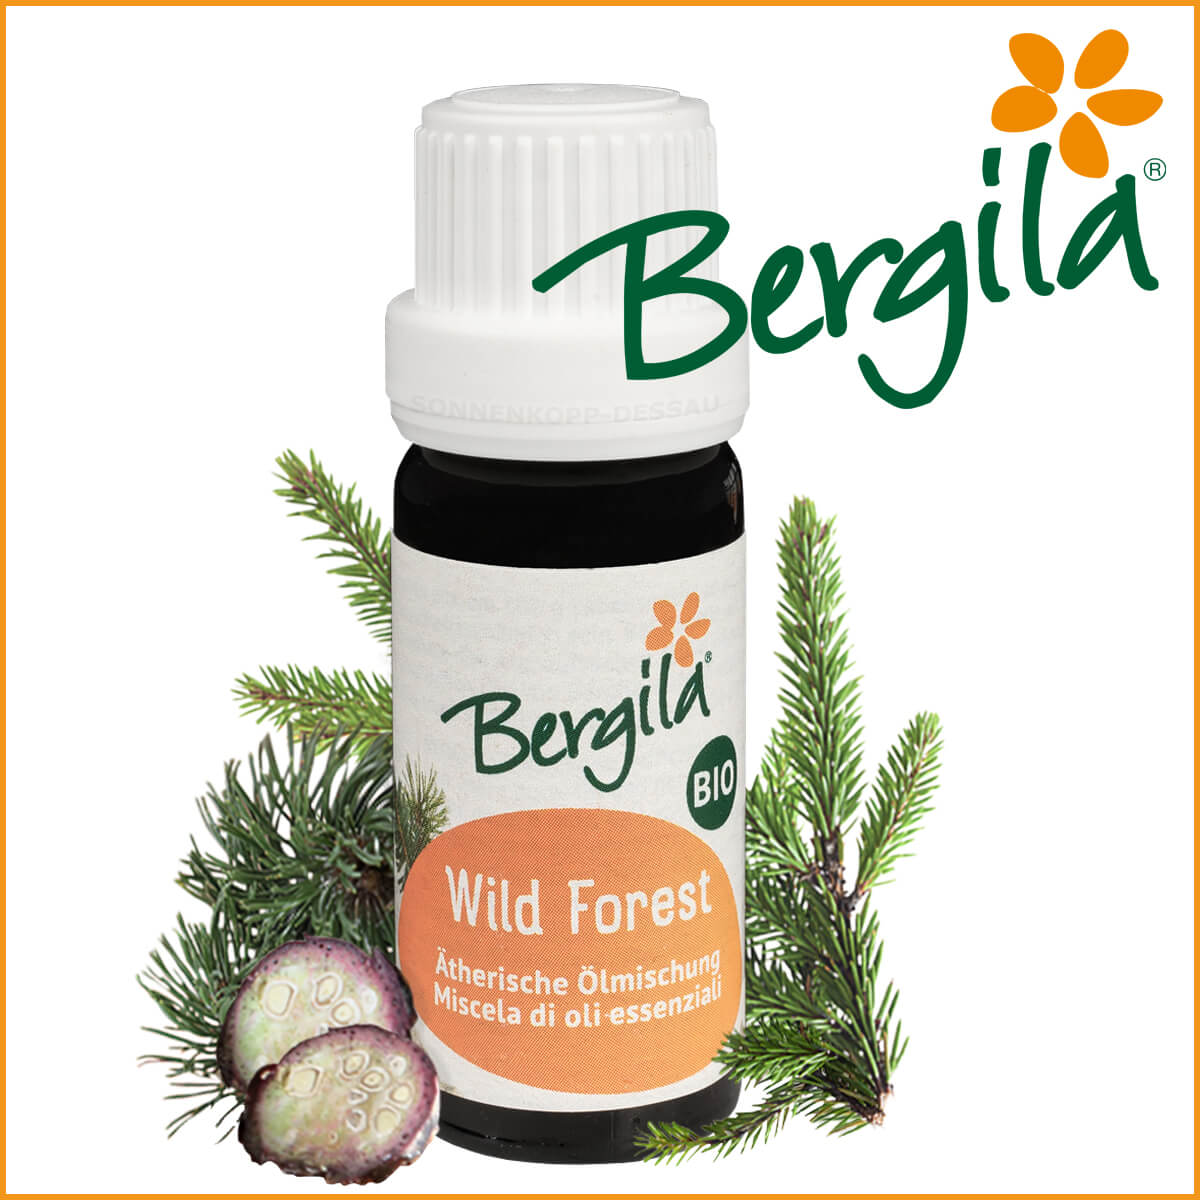 WILD FOREST - Bergila ® BIO ätherische Öl Mischung - Wild Forest TIROL